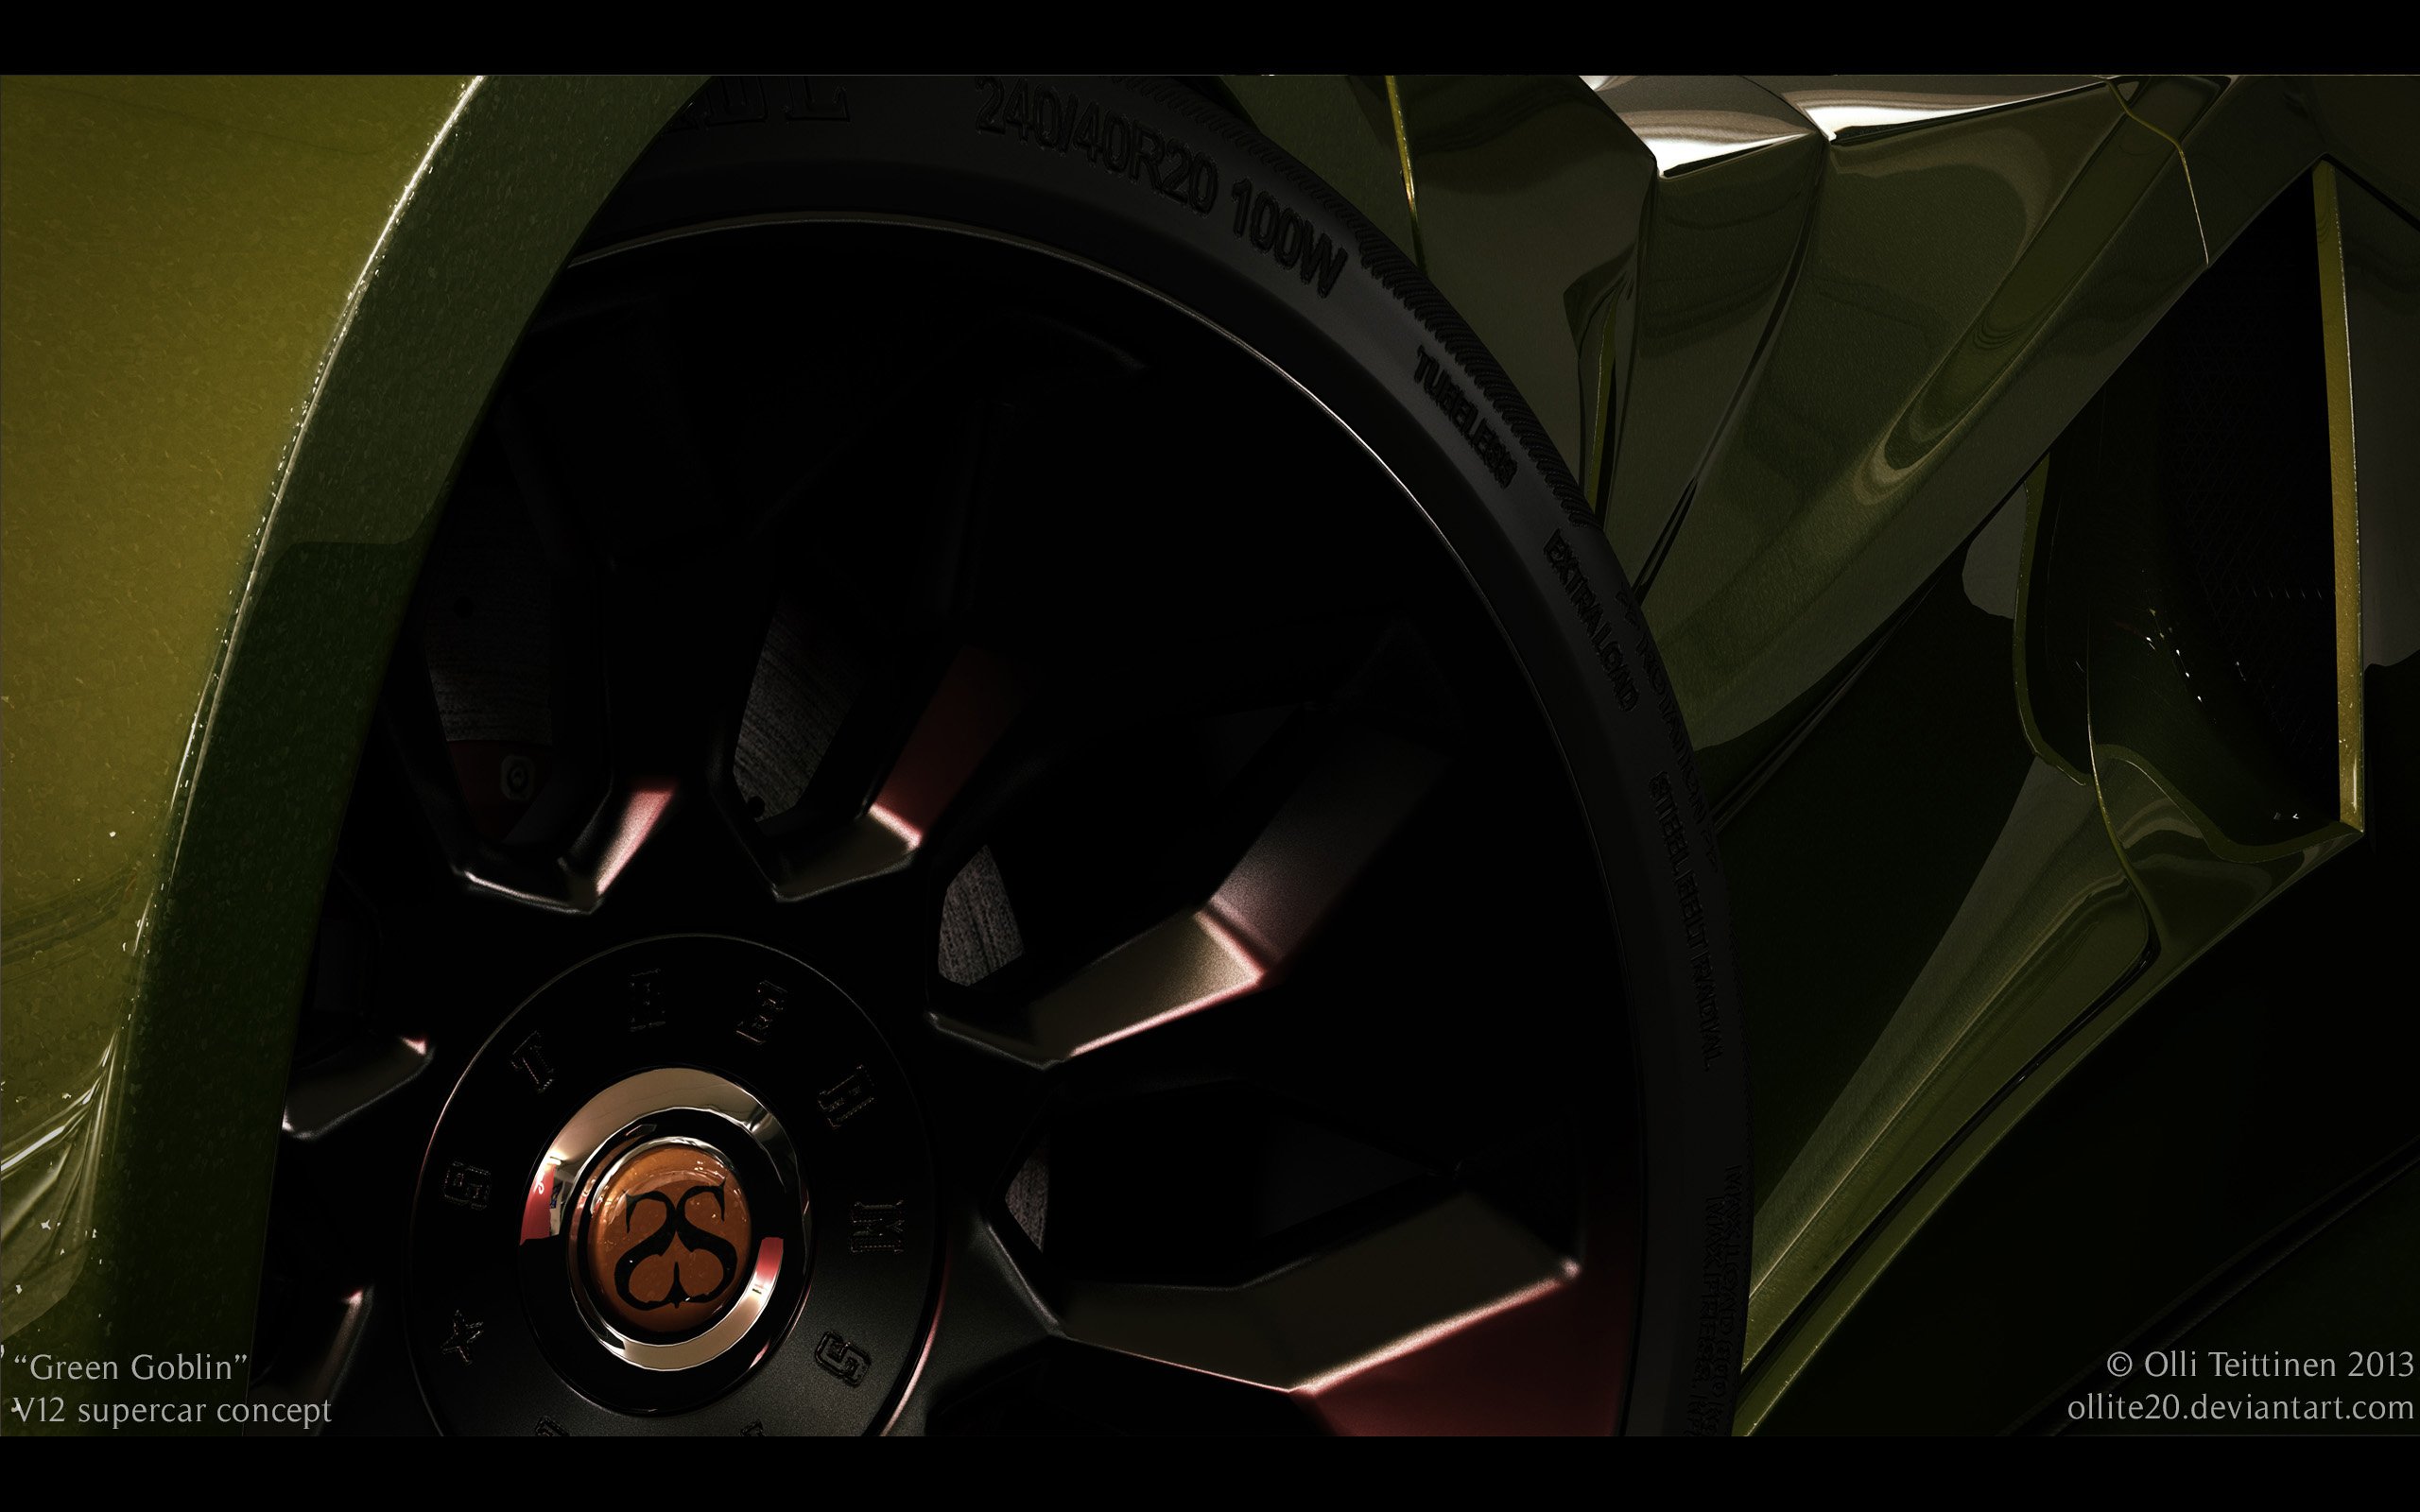 2013, V12, Goblin, Concept, Olli teittinen, Supercar, Wheel Wallpaper